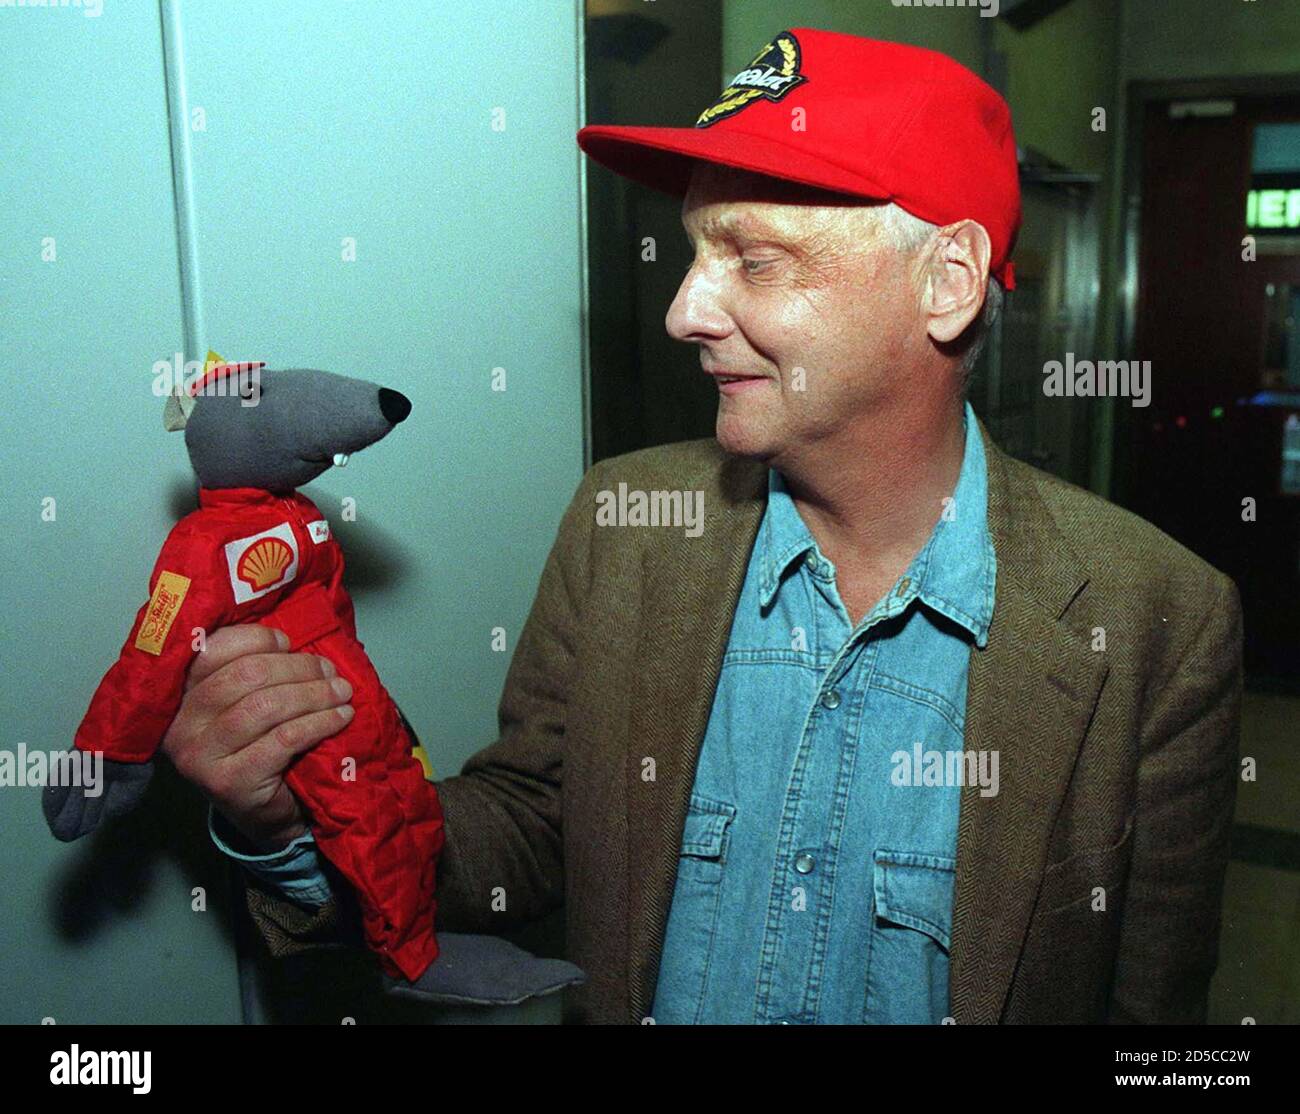 Niki Lauda, pilote de Formule 1 en Autriche, est devenu patron de la  compagnie aérienne et détient une poupée câline appelée Niki The Rat juin  11. Niki The Rat, fabriqué par les